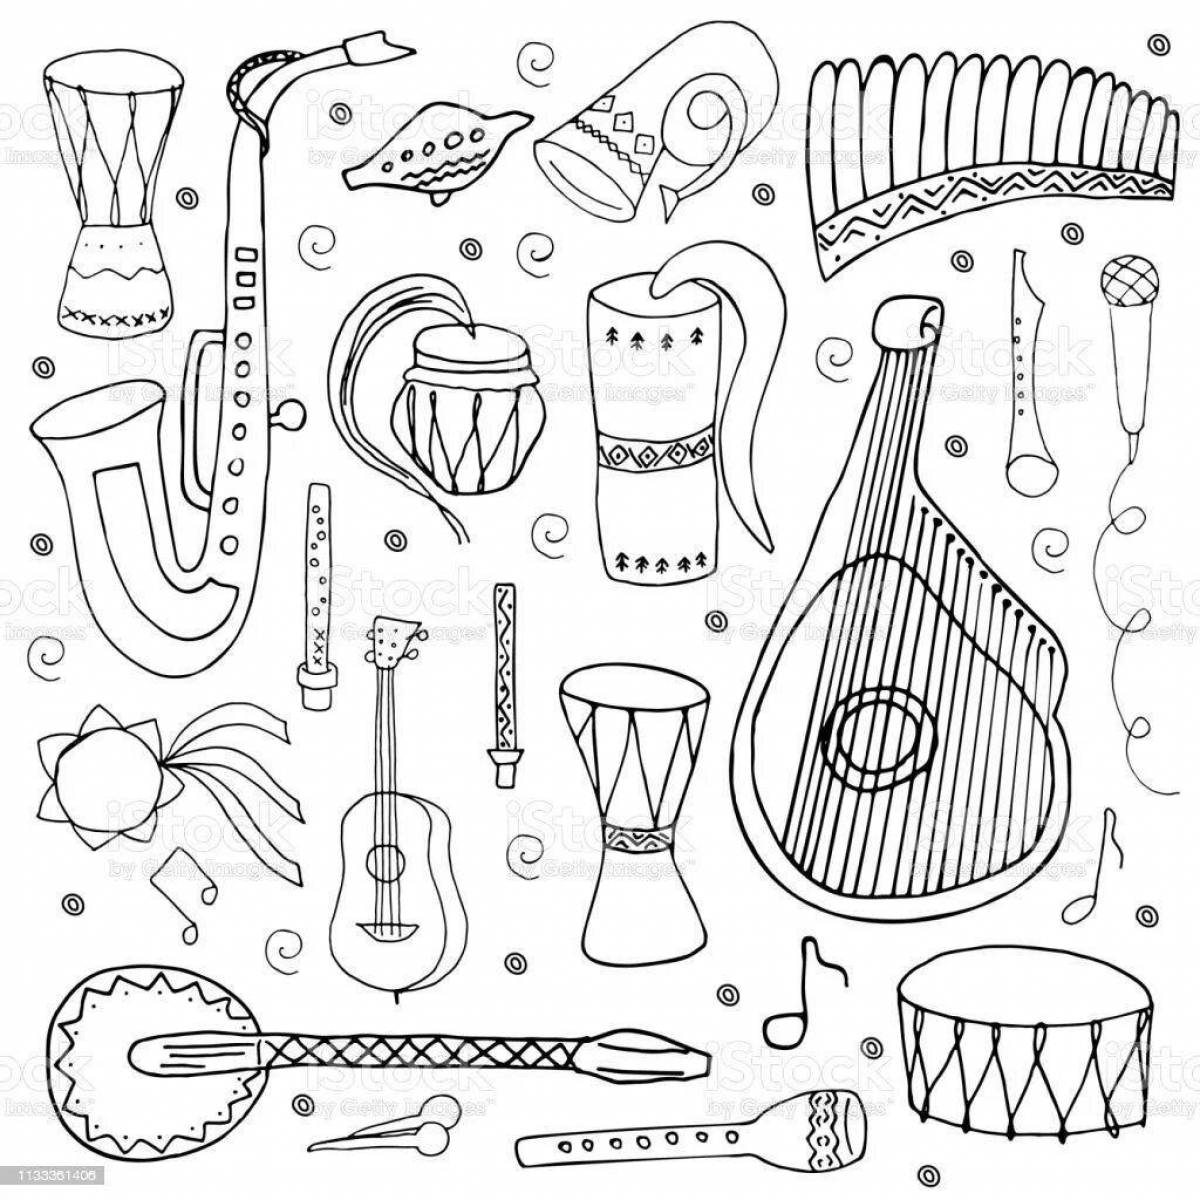 Вдохновляющие народные музыкальные инструменты раскраски для детей